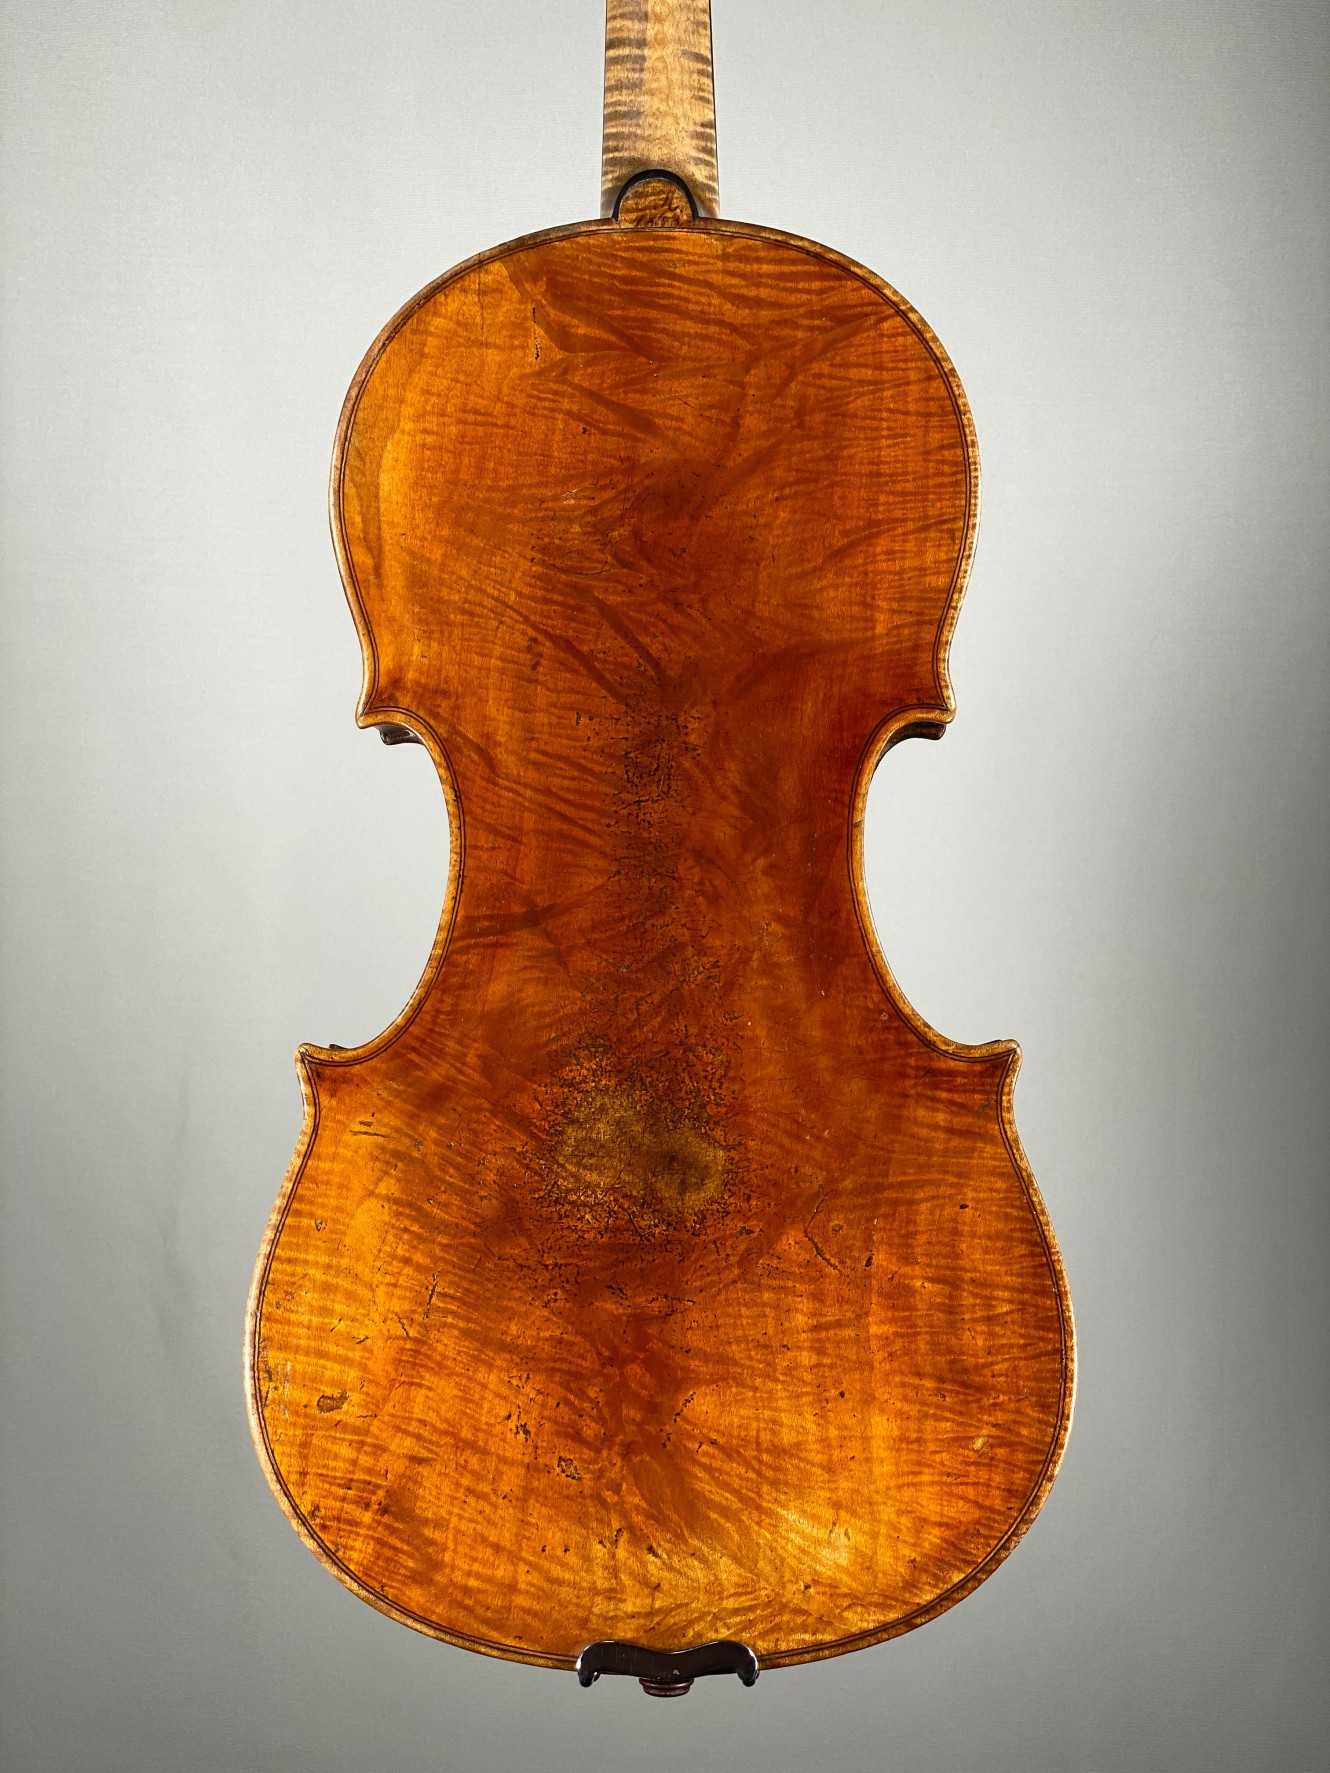 Altdeutsch Meister Arbeit, Germany, ca1820　オールド・ジャーマン・ヴァイオリン　ドイツ